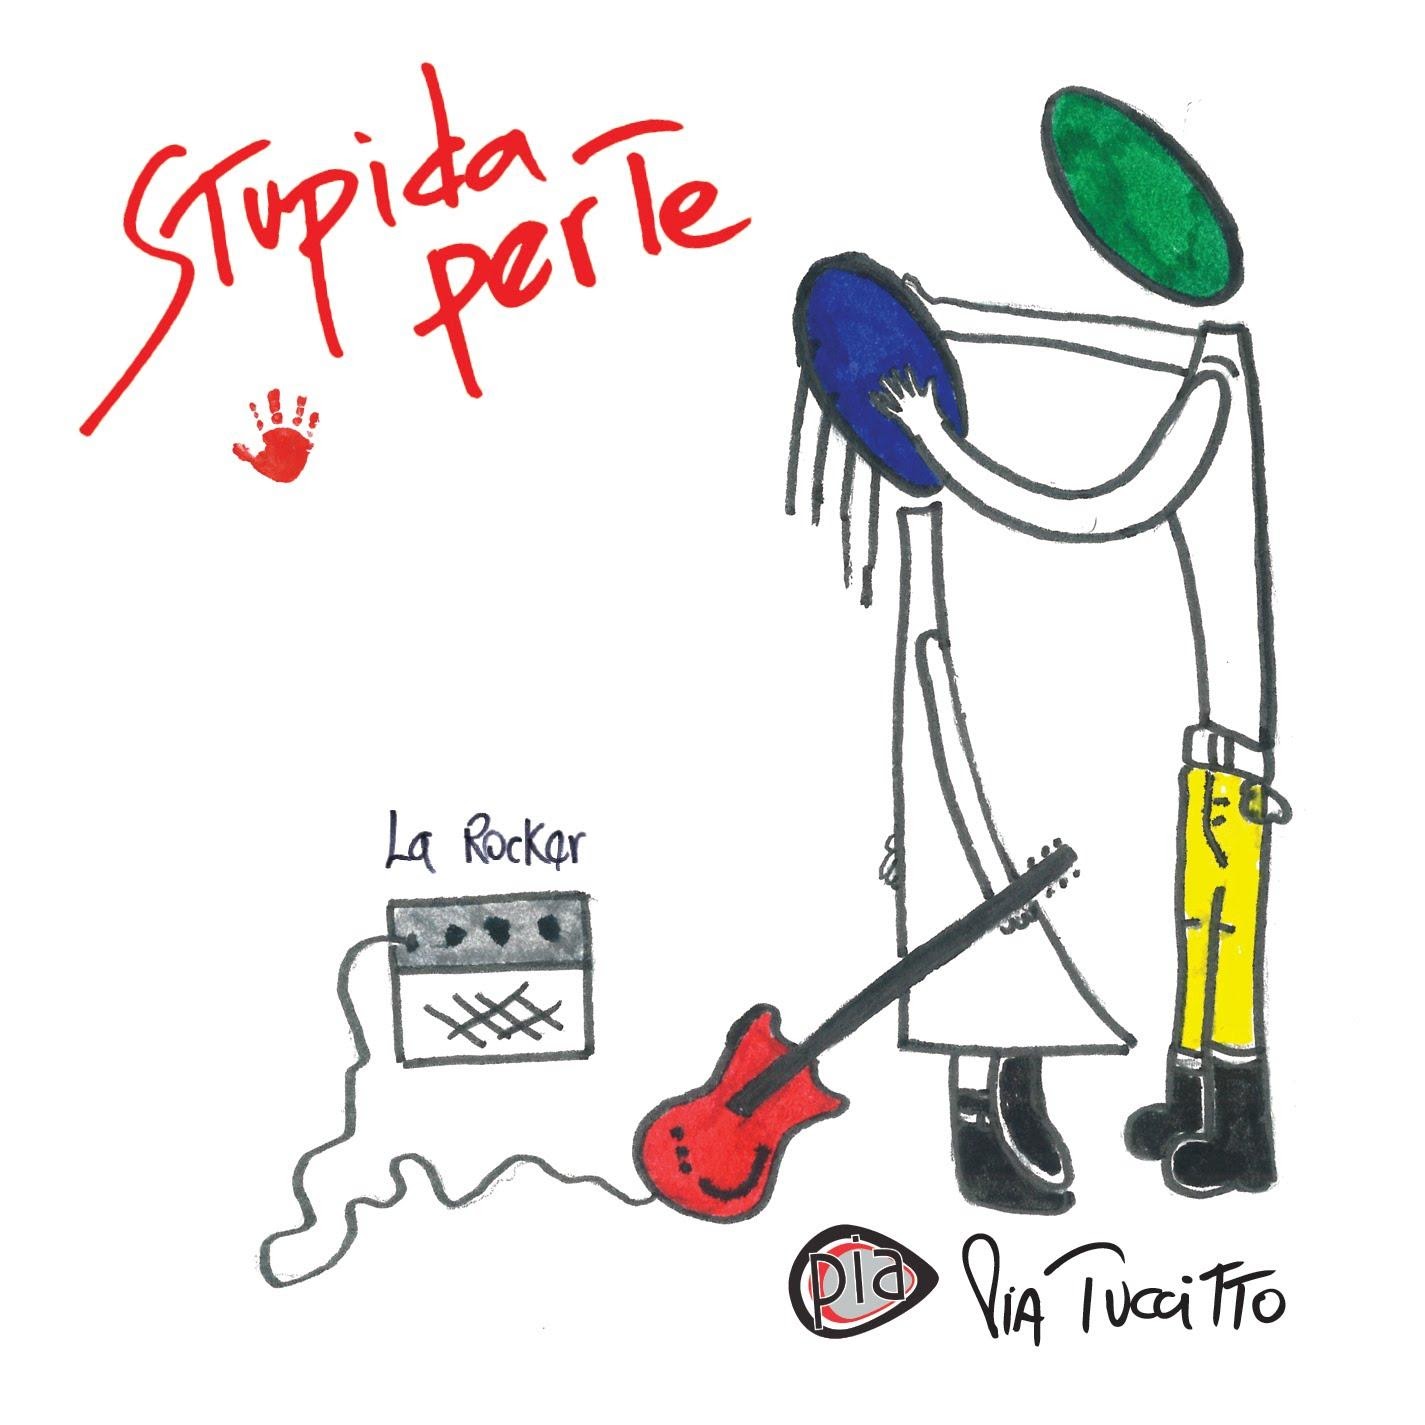 Pia Tuccitto “Stupida per te” è il terzo singolo estratto dall’album “Romantica io” della cantautrice rock bolognese